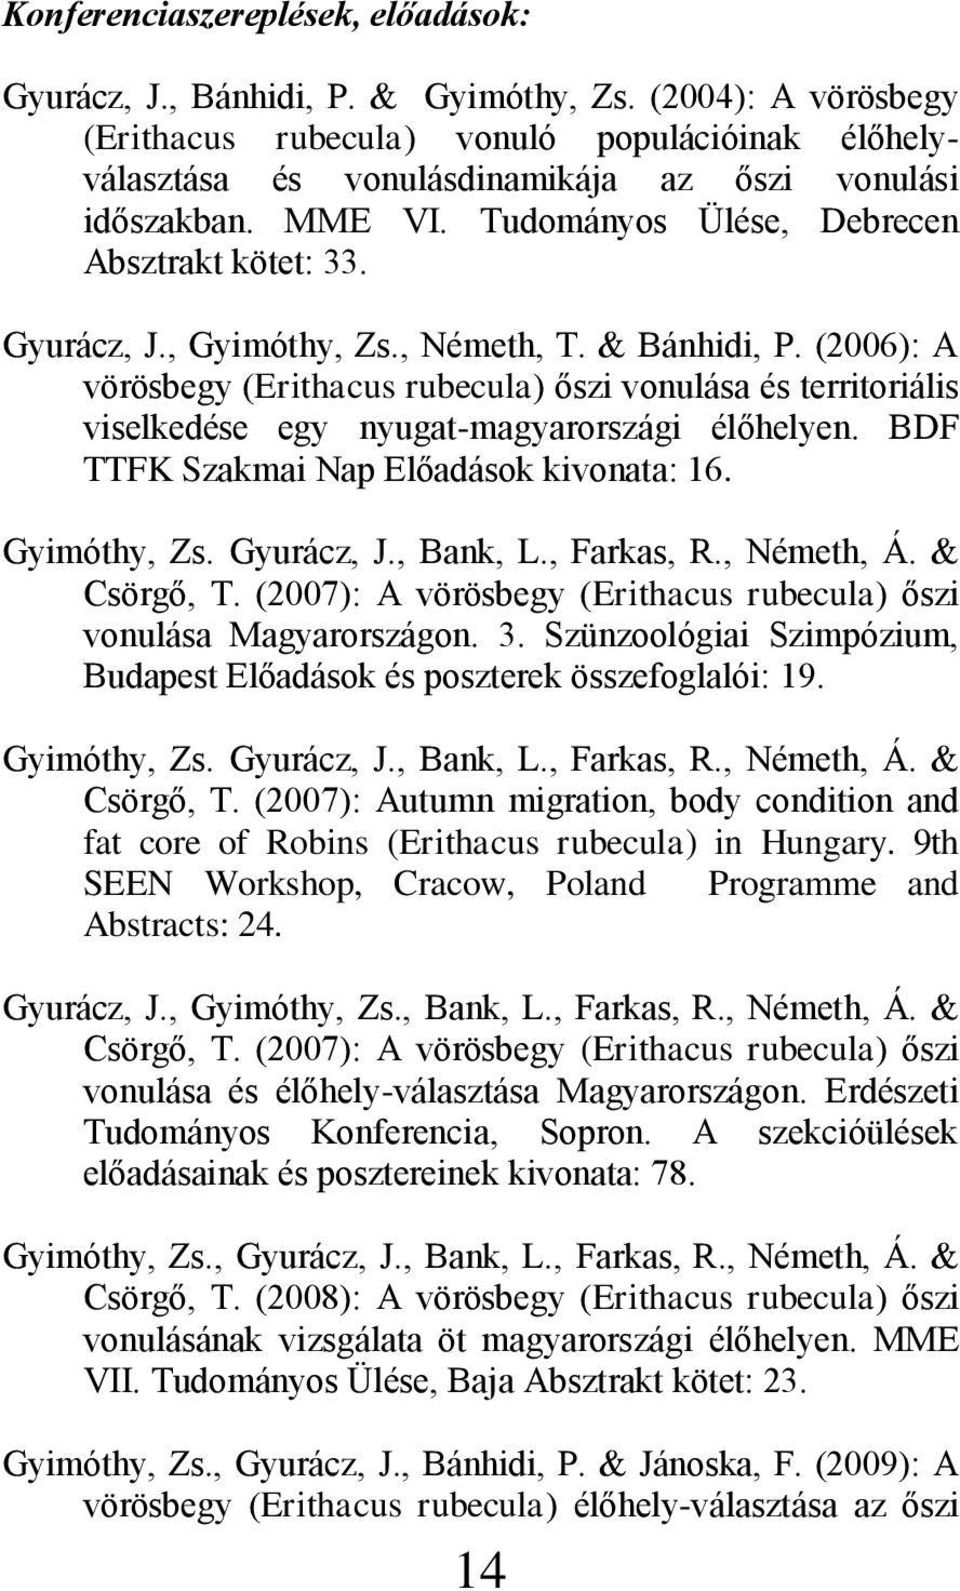 , Gyimóthy, Zs., Németh, T. & Bánhidi, P. (2006): A vörösbegy (Erithacus rubecula) őszi vonulása és territoriális viselkedése egy nyugat-magyarországi élőhelyen.